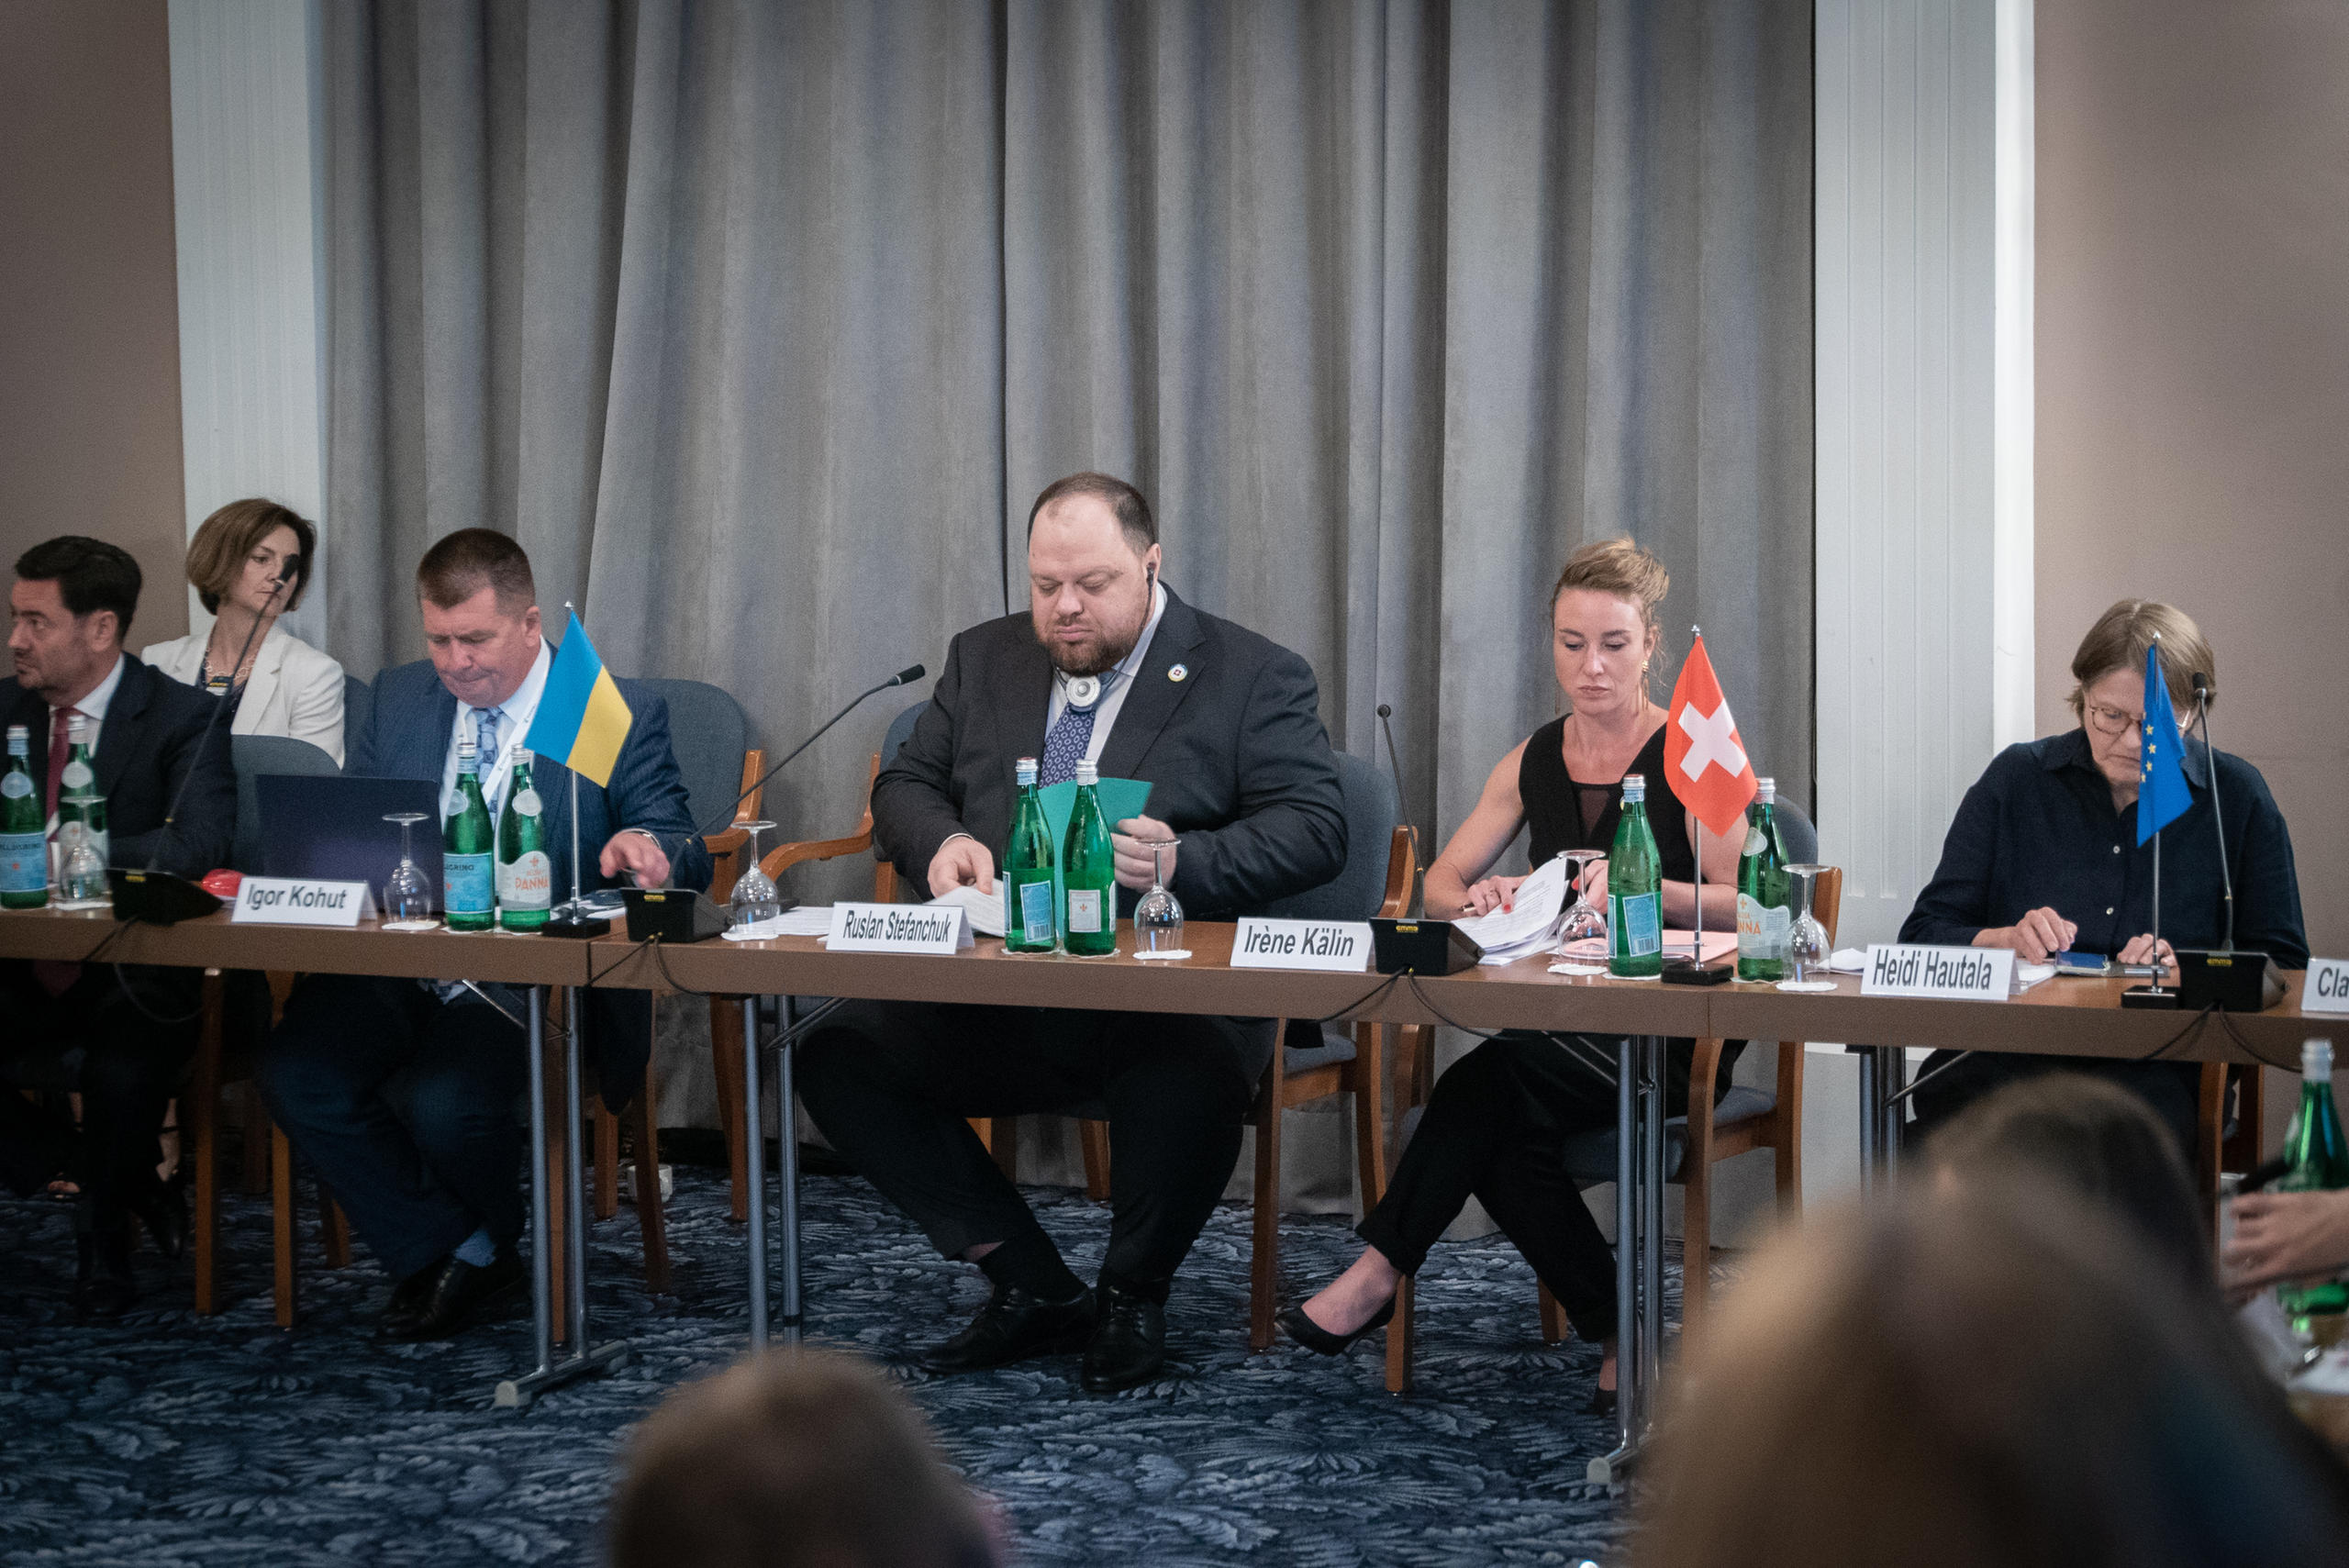 烏克蘭議會主席Ruslan Stefanchuk和瑞士議會全國委員會主席Irène Kälin與兩國議會的代表就加強烏克蘭的民主展開會議。